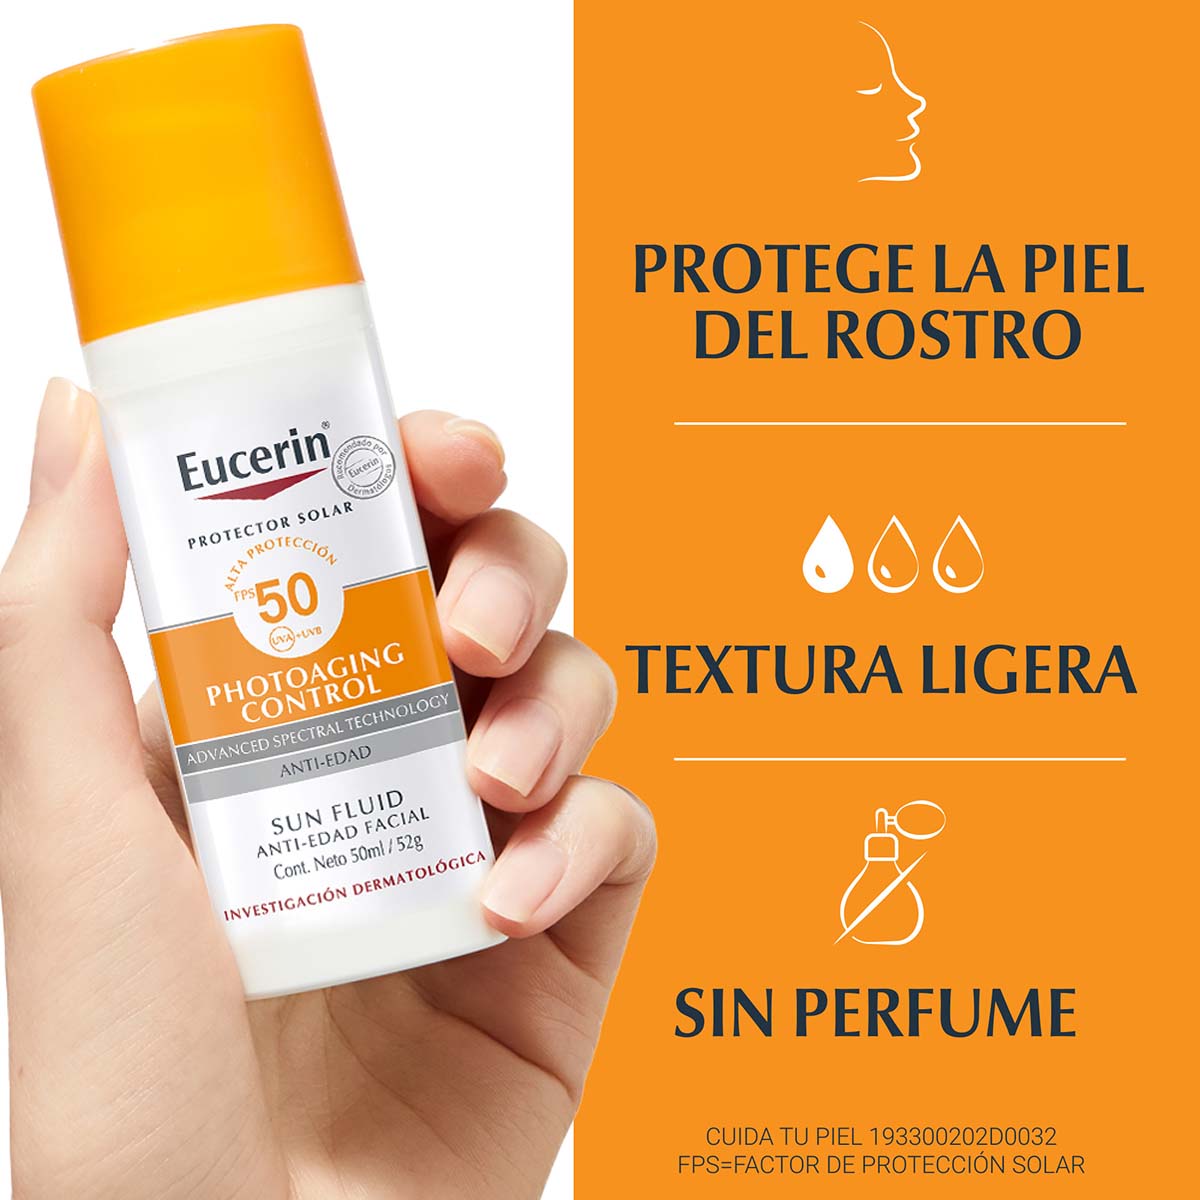 Eucerin protector solar facial fluido anti-edad FPS 50 50ml.